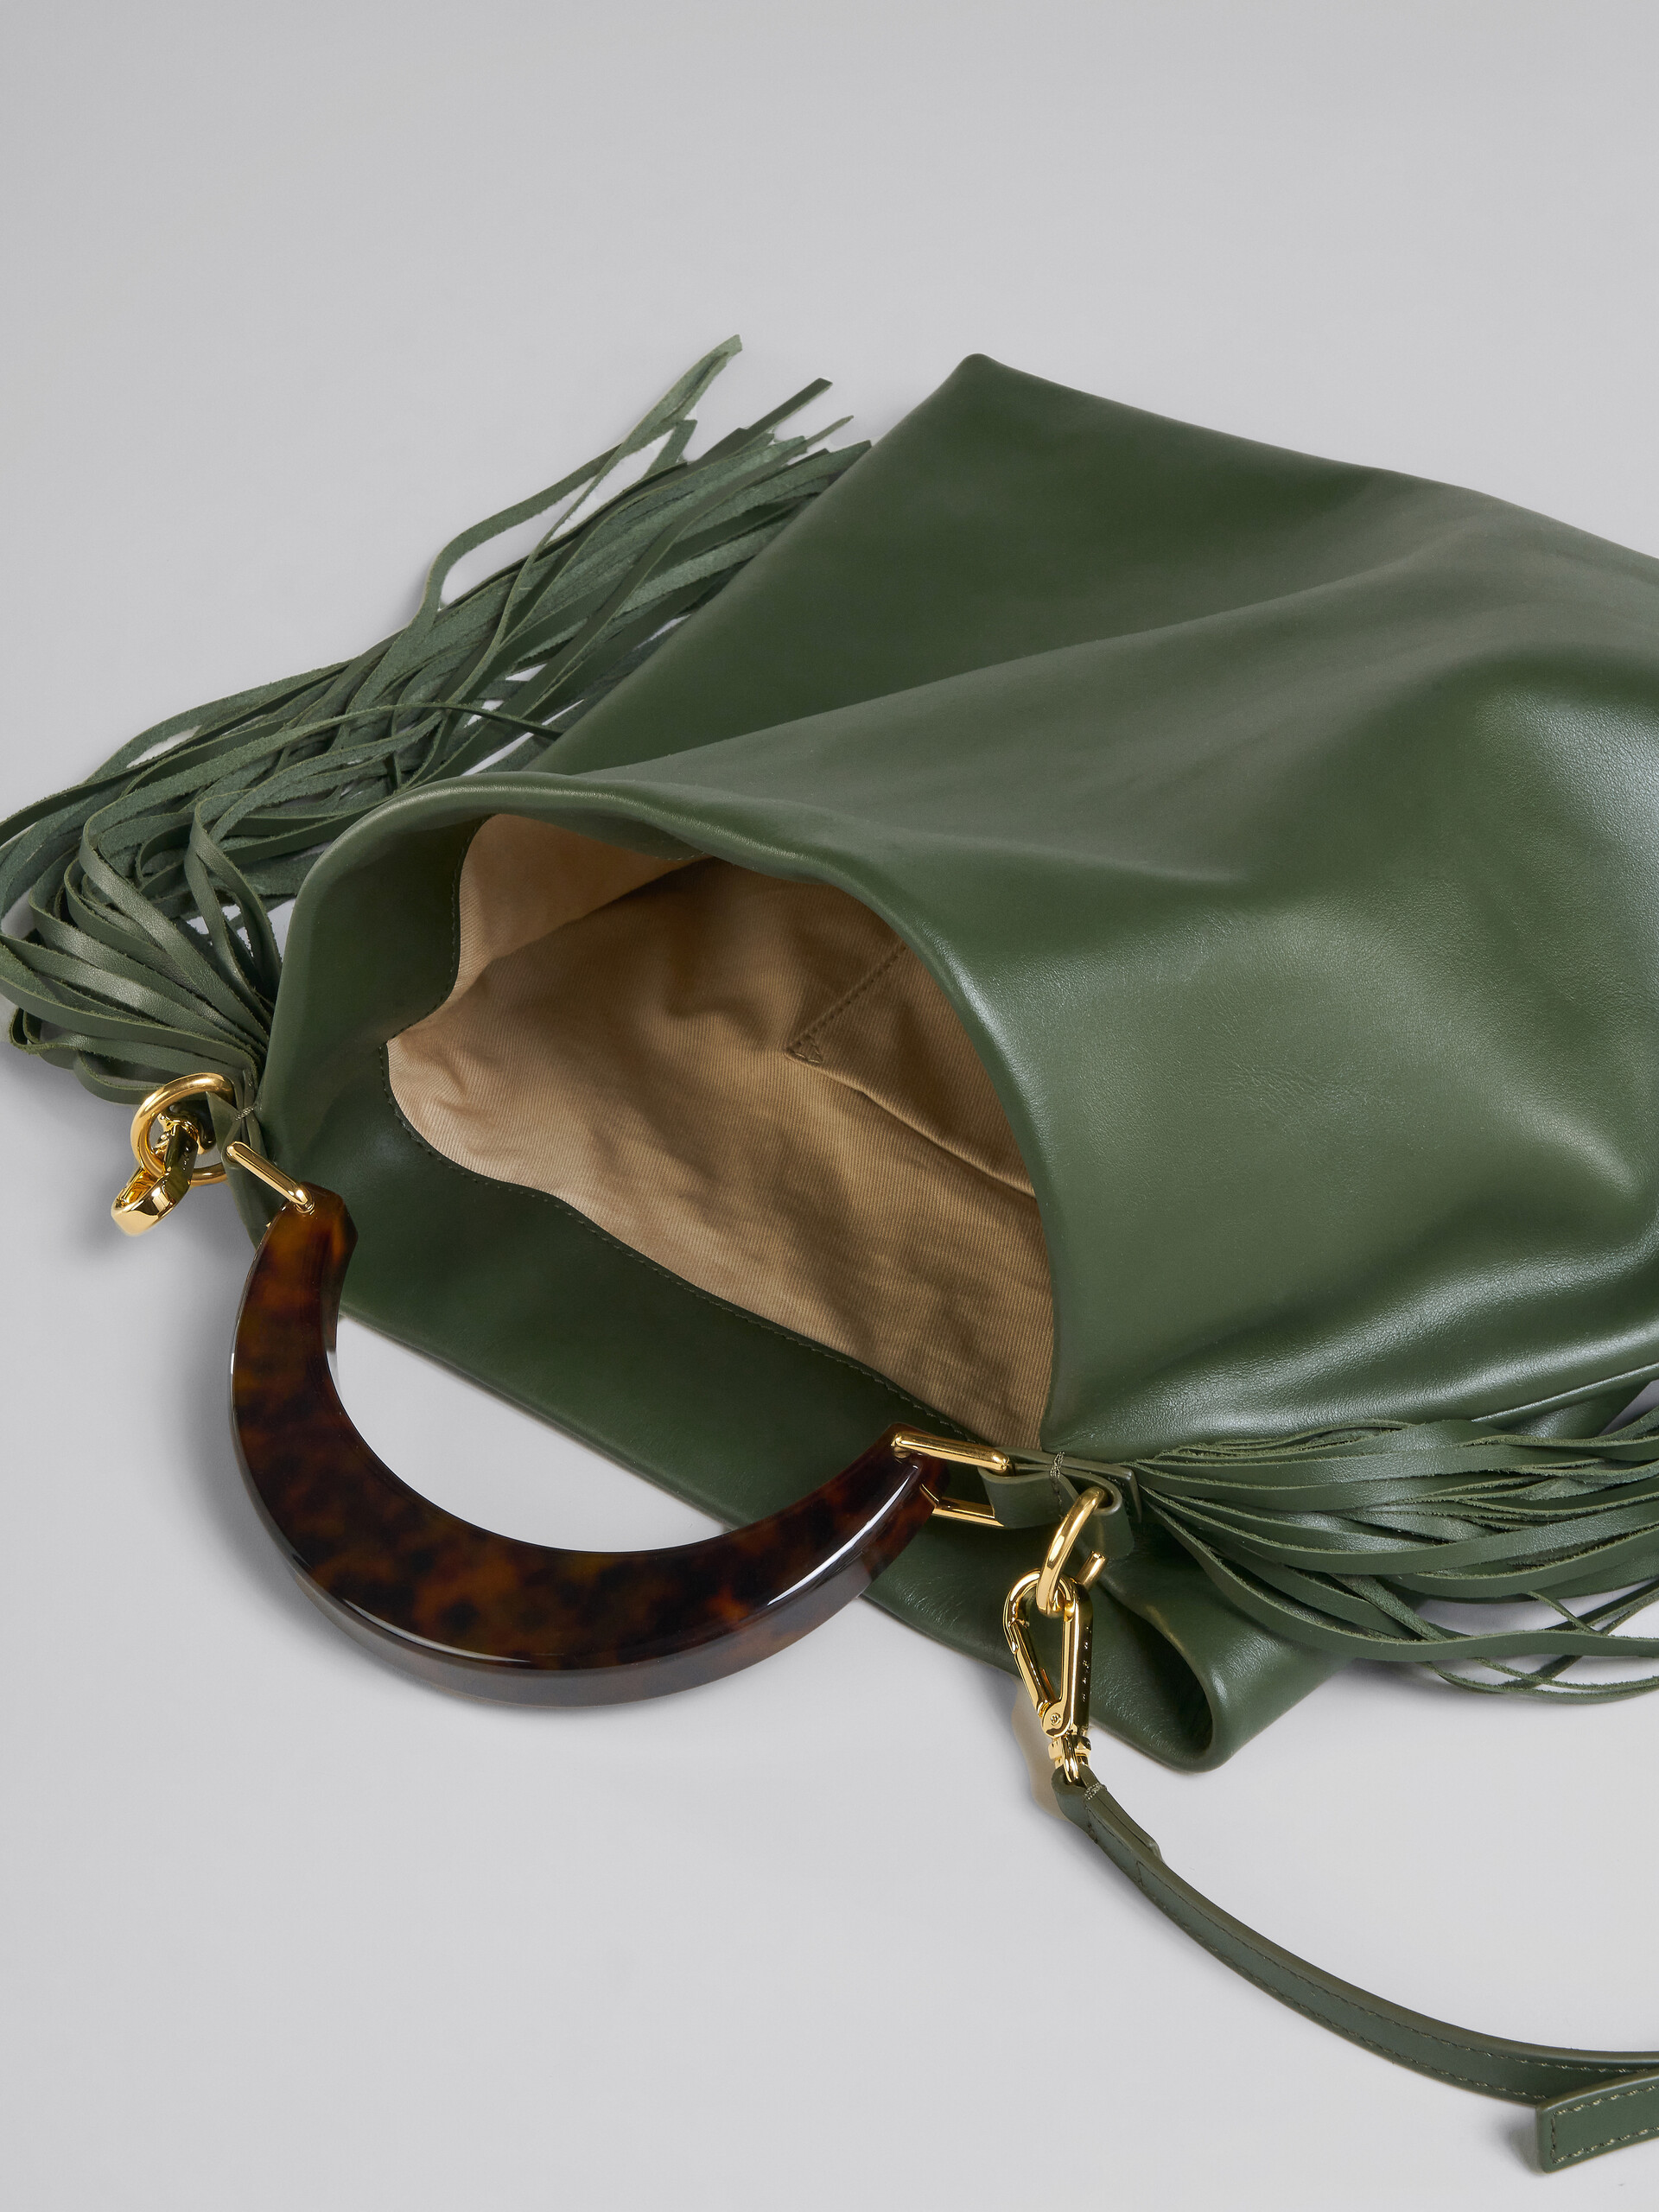 Venice Medium Bag in green leather with fringes - Shoulder Bag - Image 4